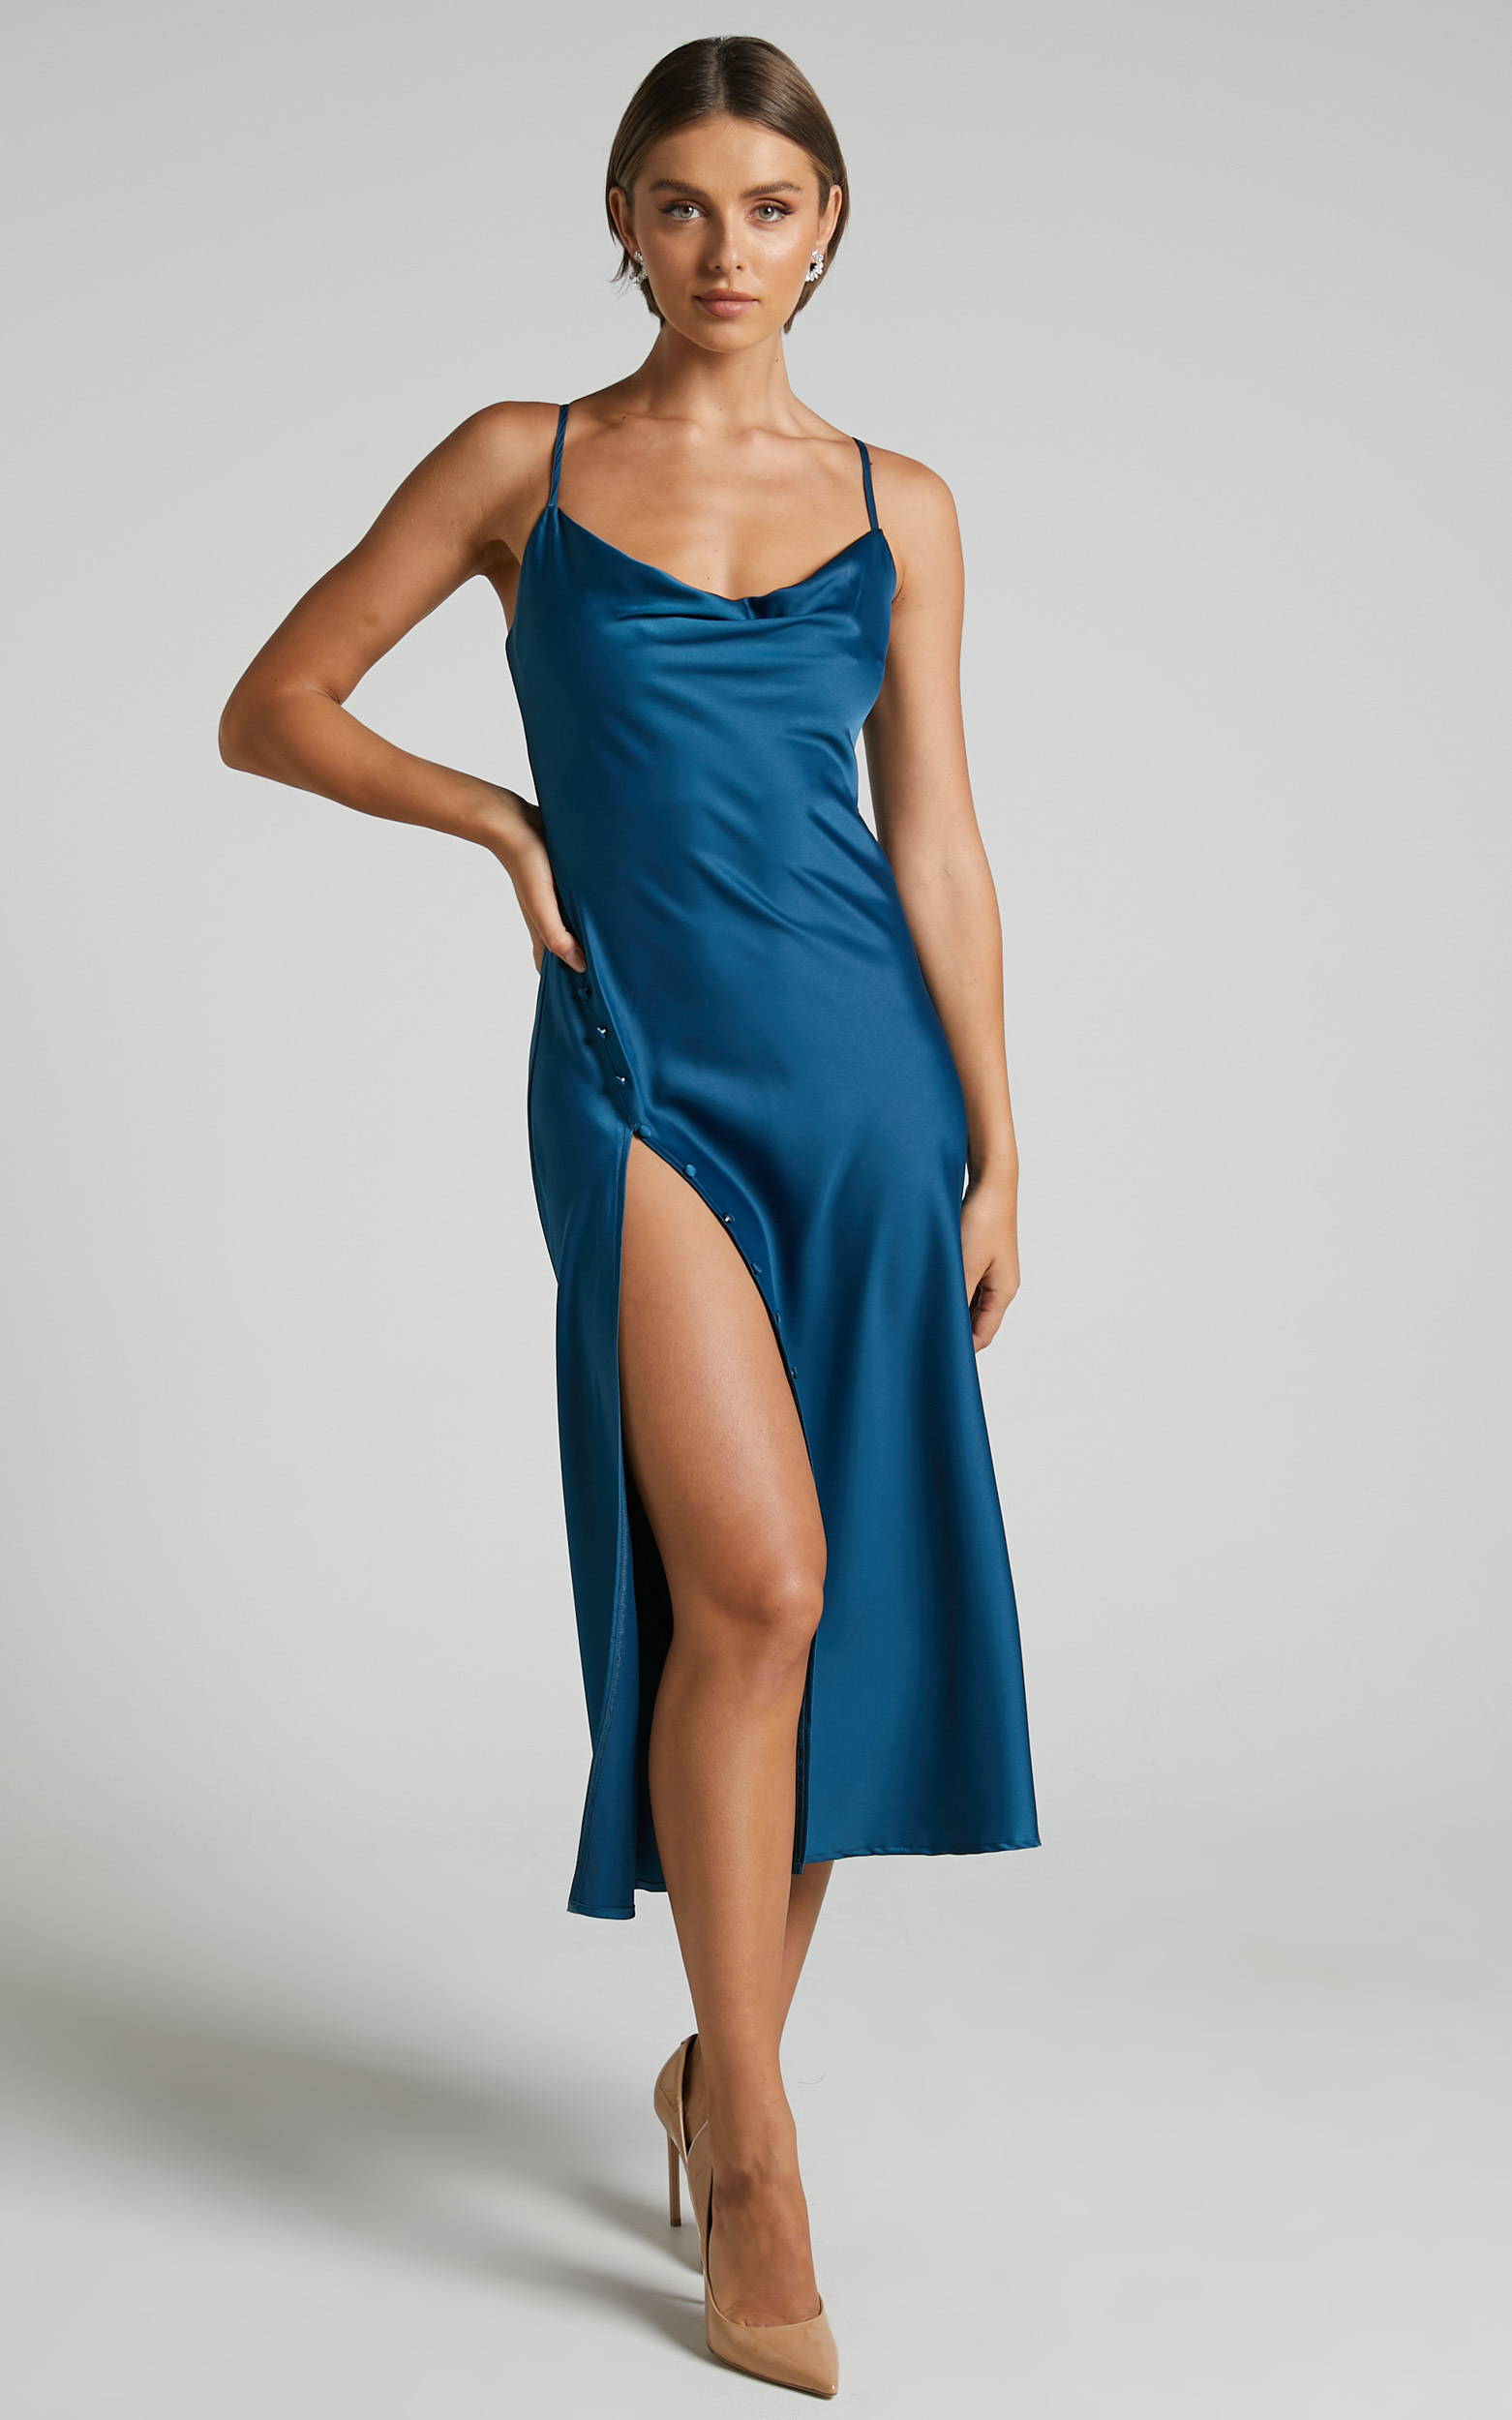 Flordeliza Midi Dress - Cowl Neck Thigh Slit Slip Dress in Steel Blue - 04, BLU1, hi-res image number null